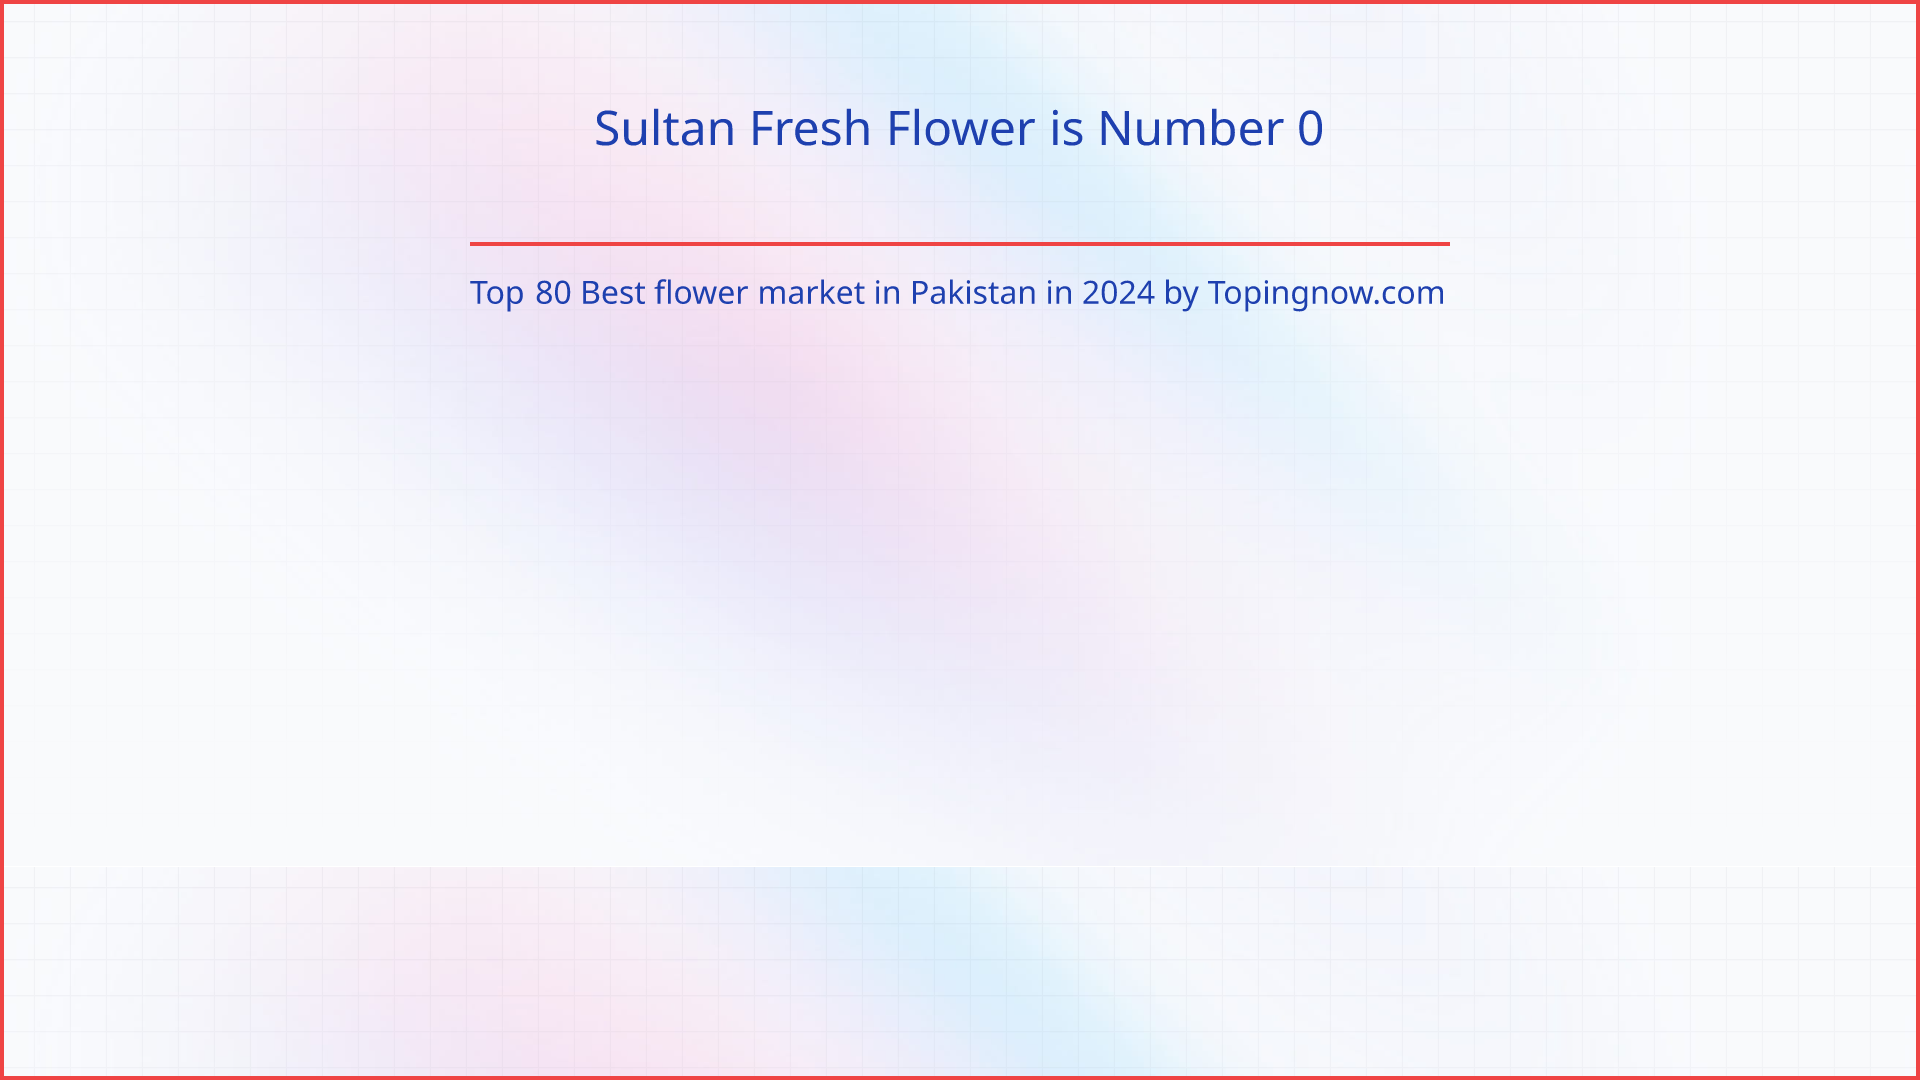 Sultan Fresh Flower: Top 80 Best flower market in Pakistan in 2024